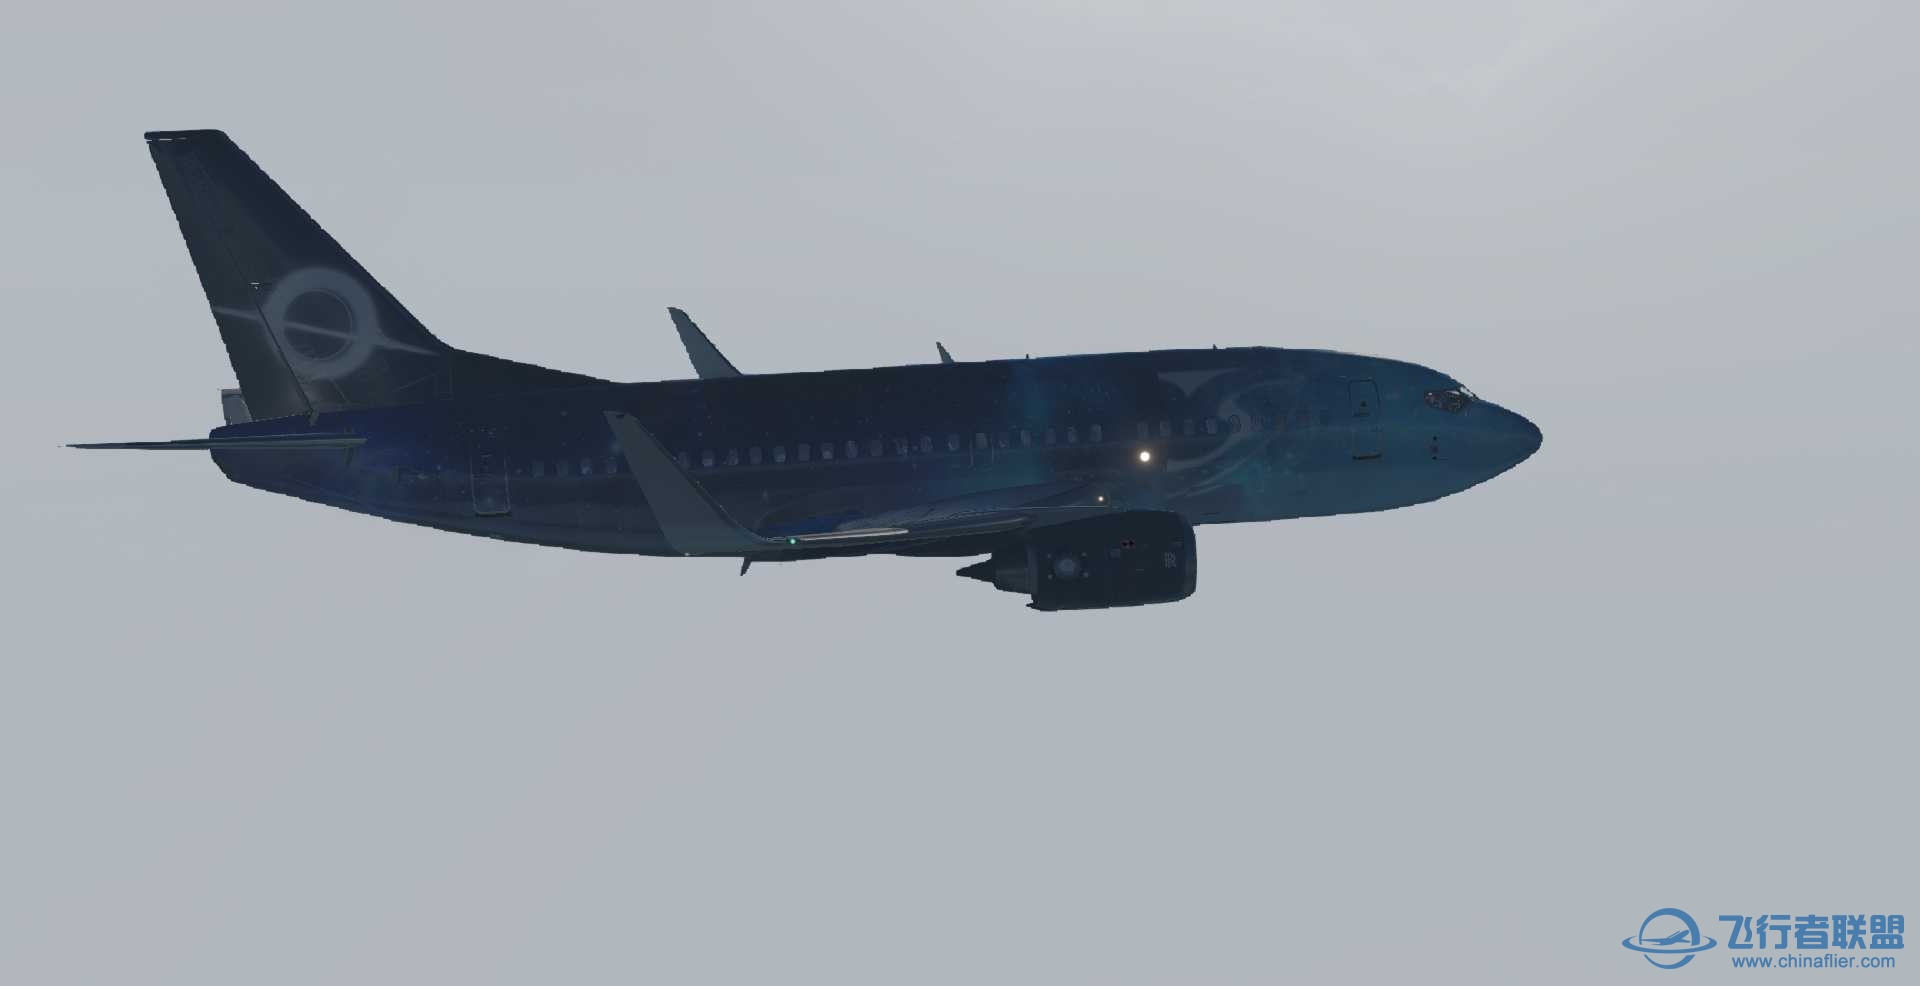 波音737-500 星空彩绘机 ZSPD-ZBAD航线美图-7105 